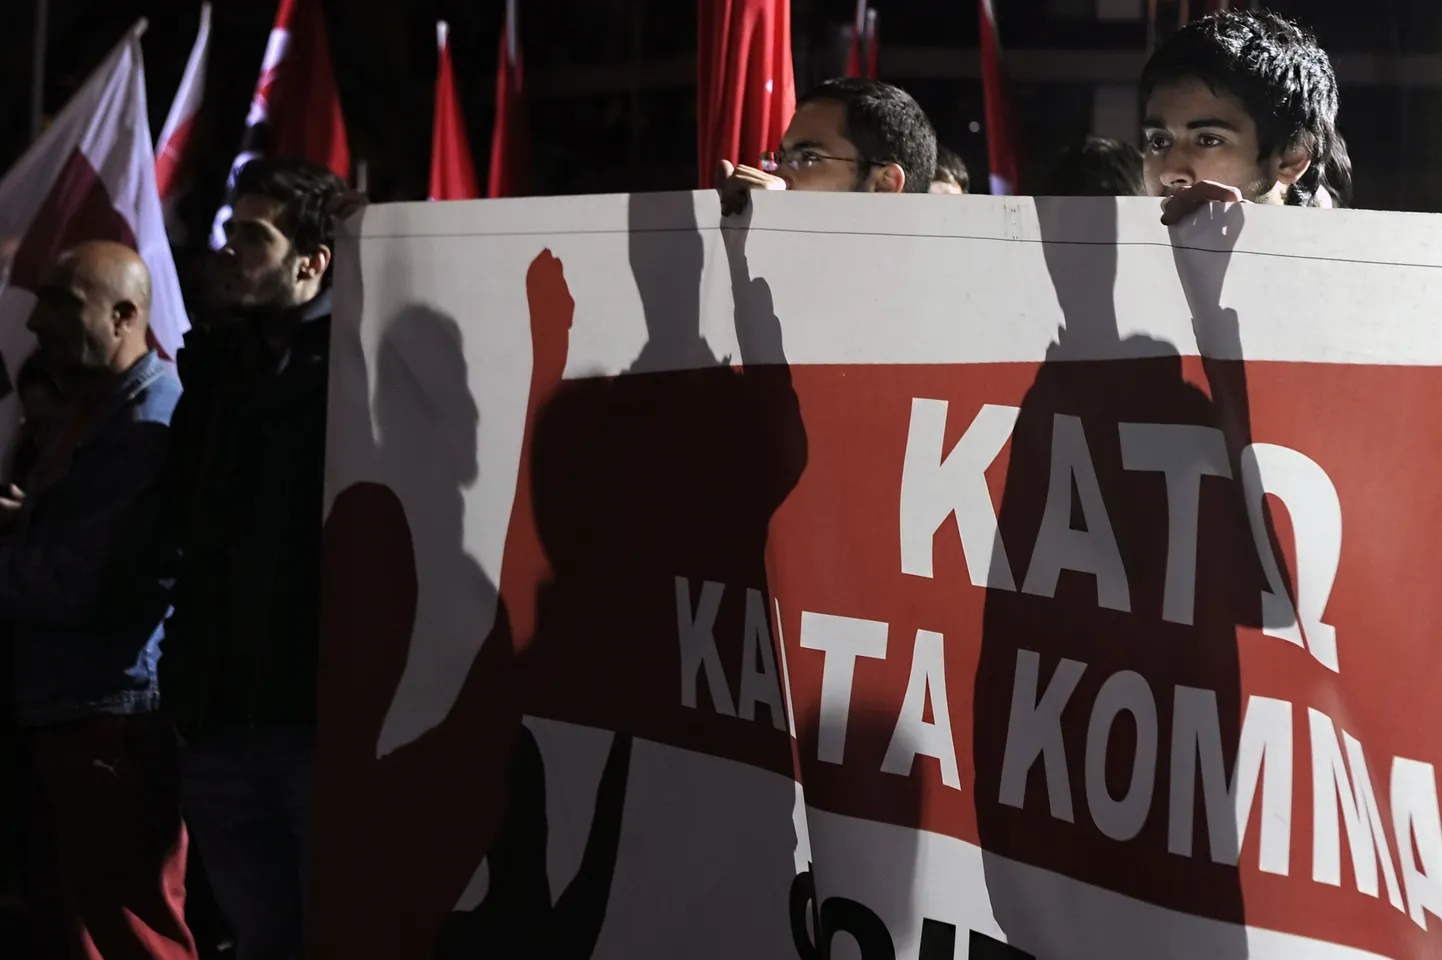 Kreeka töötud meeleavaldusel.